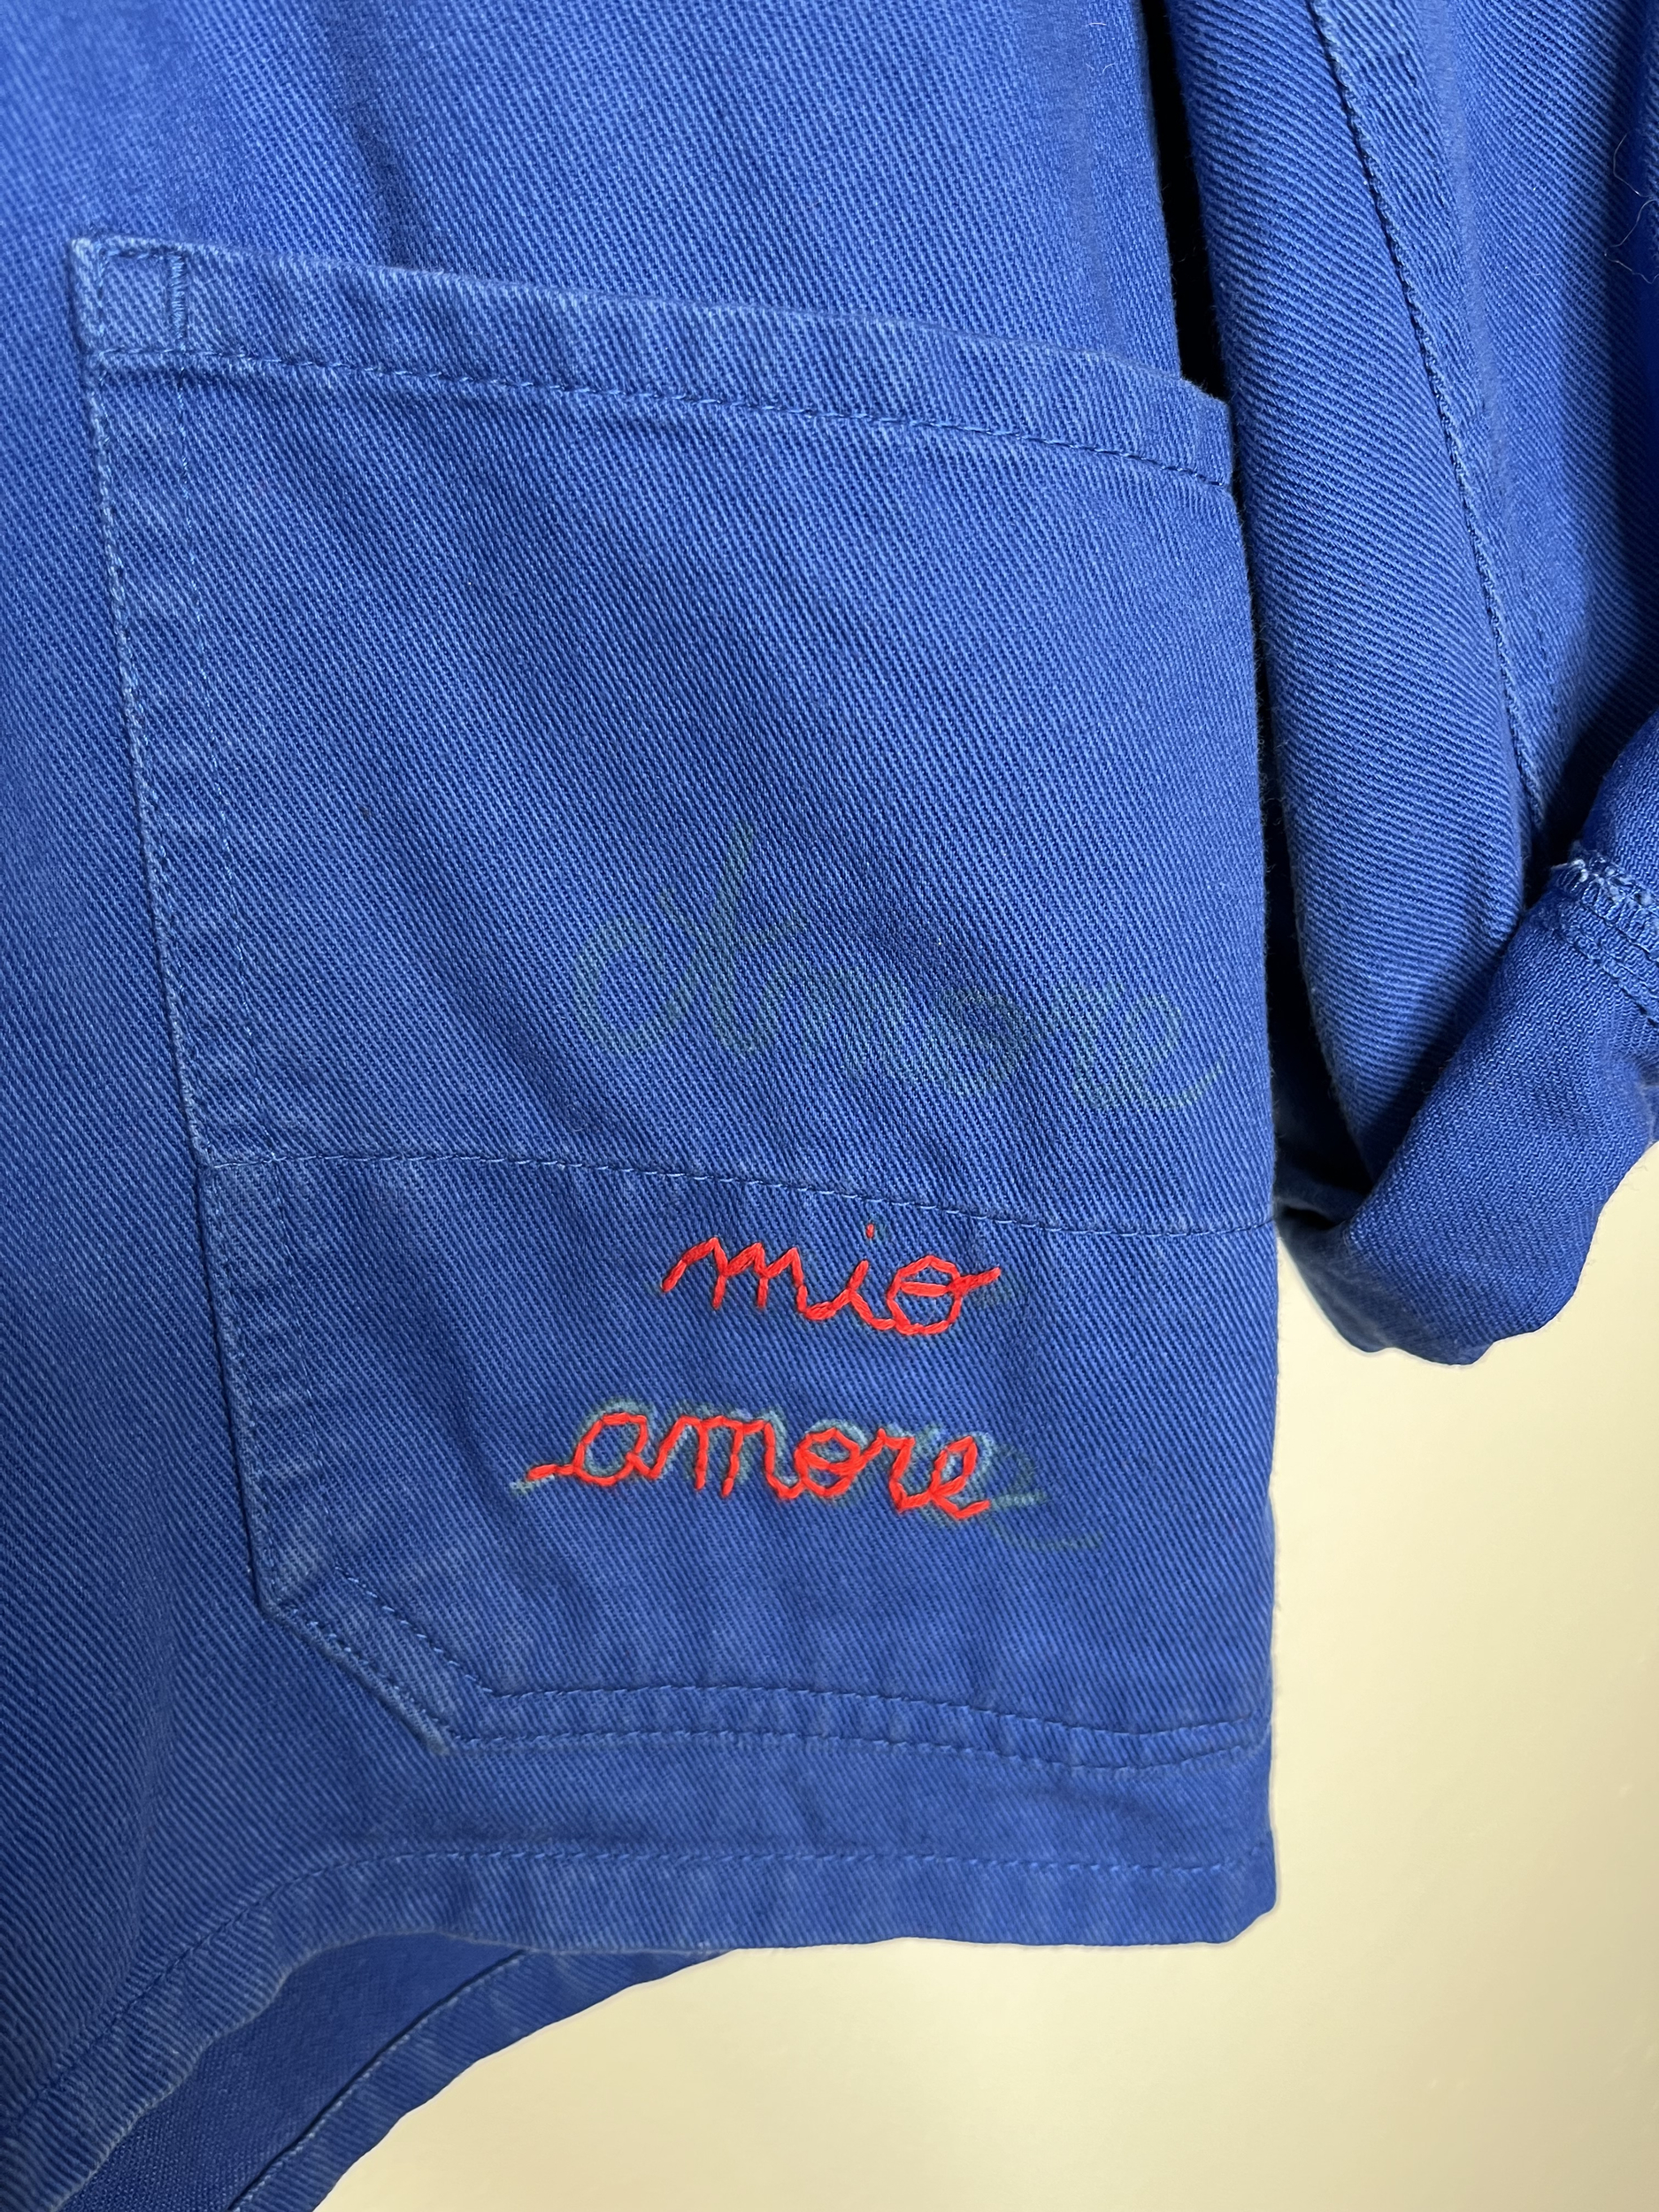 veste bleu de travail vintage mio amore vintage détail poches brodées